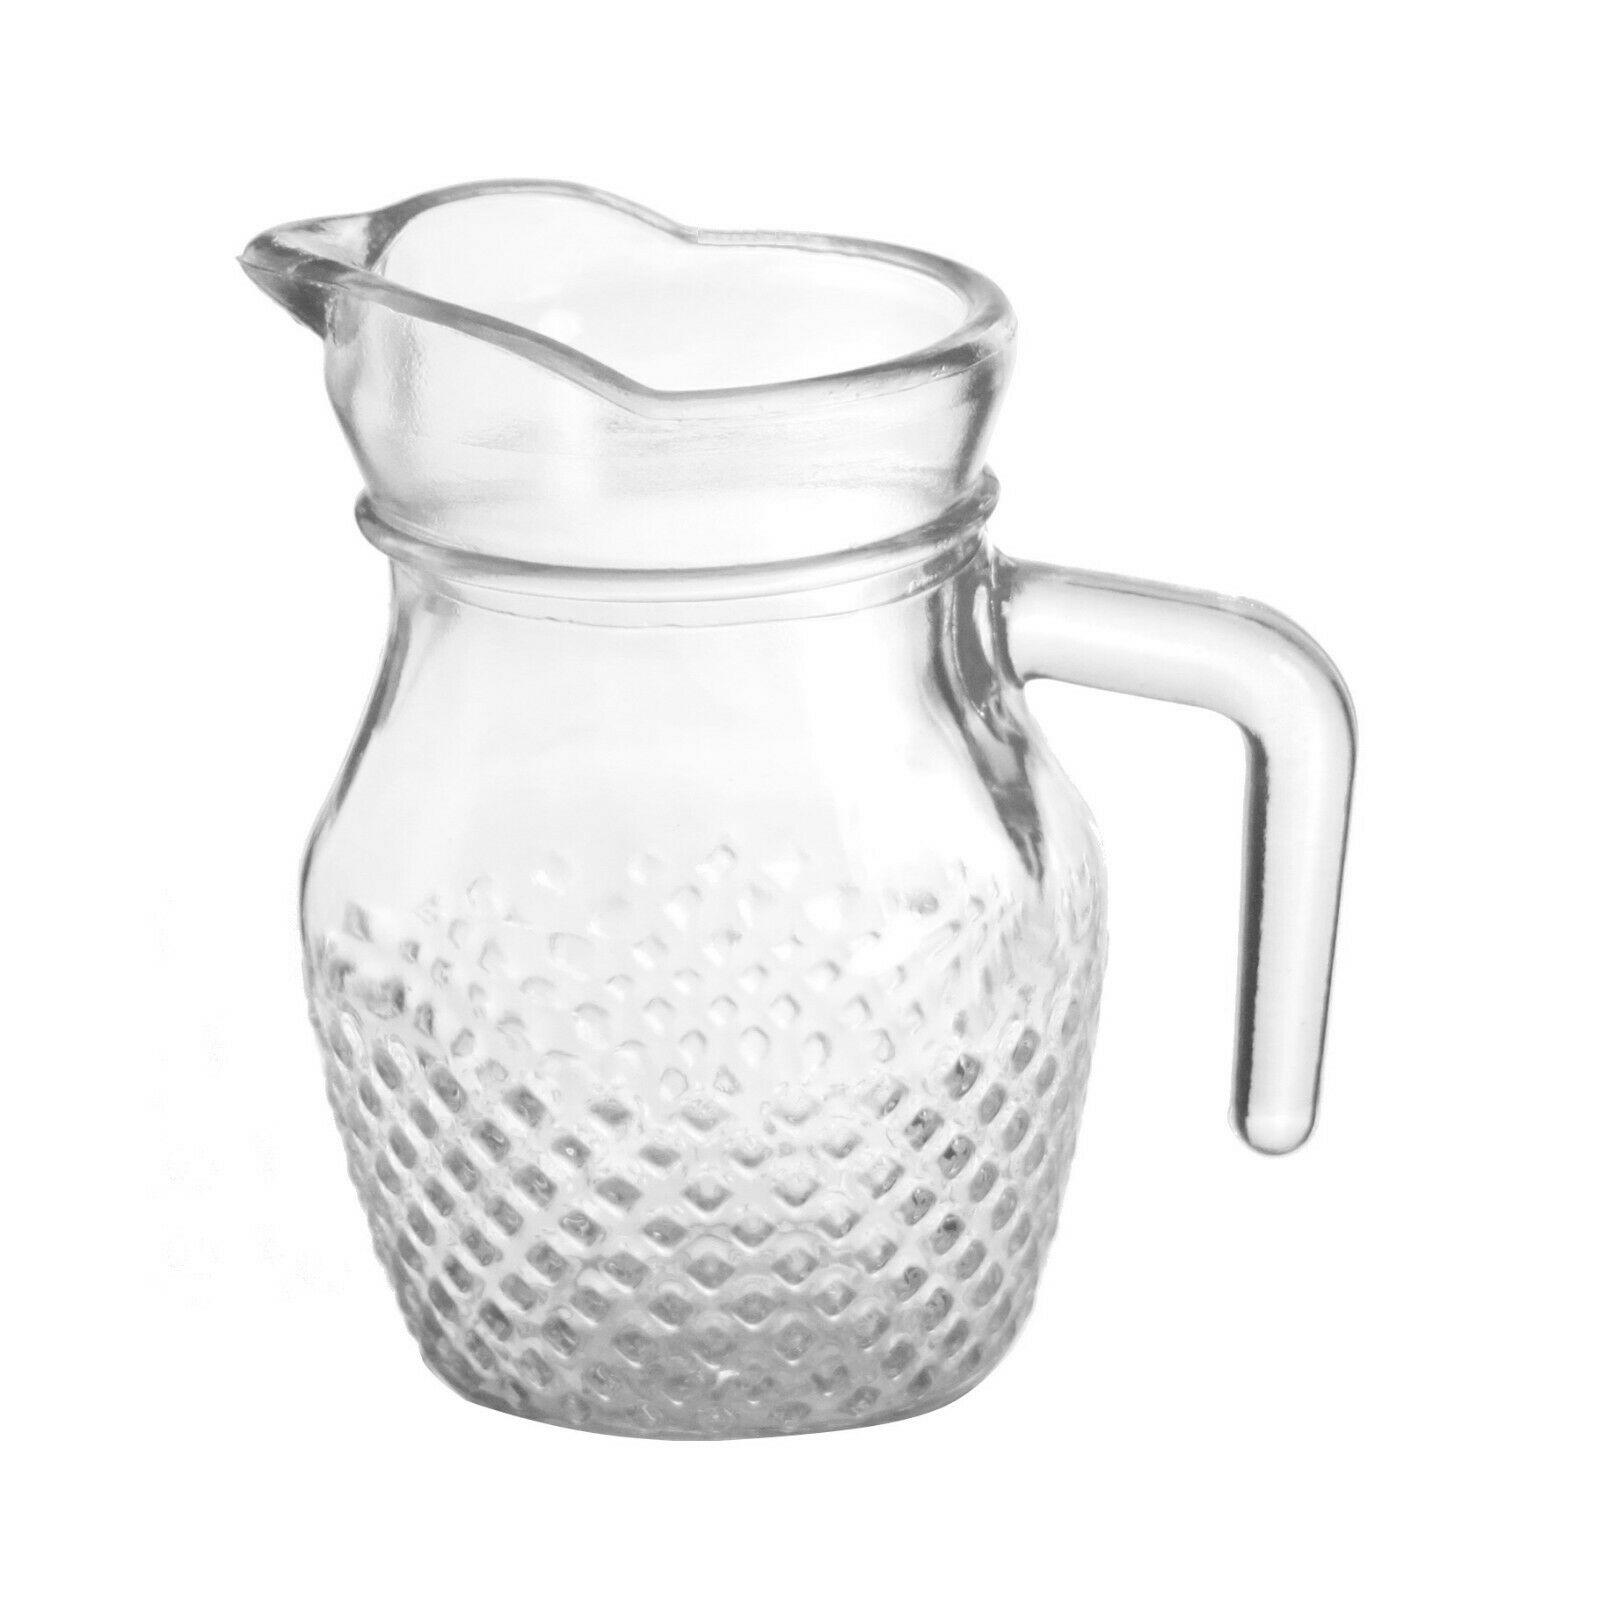 3 X 1.8L Kitchen Fridge Glass Pitcher Water Squash Milk Juice Jug With Lid New 